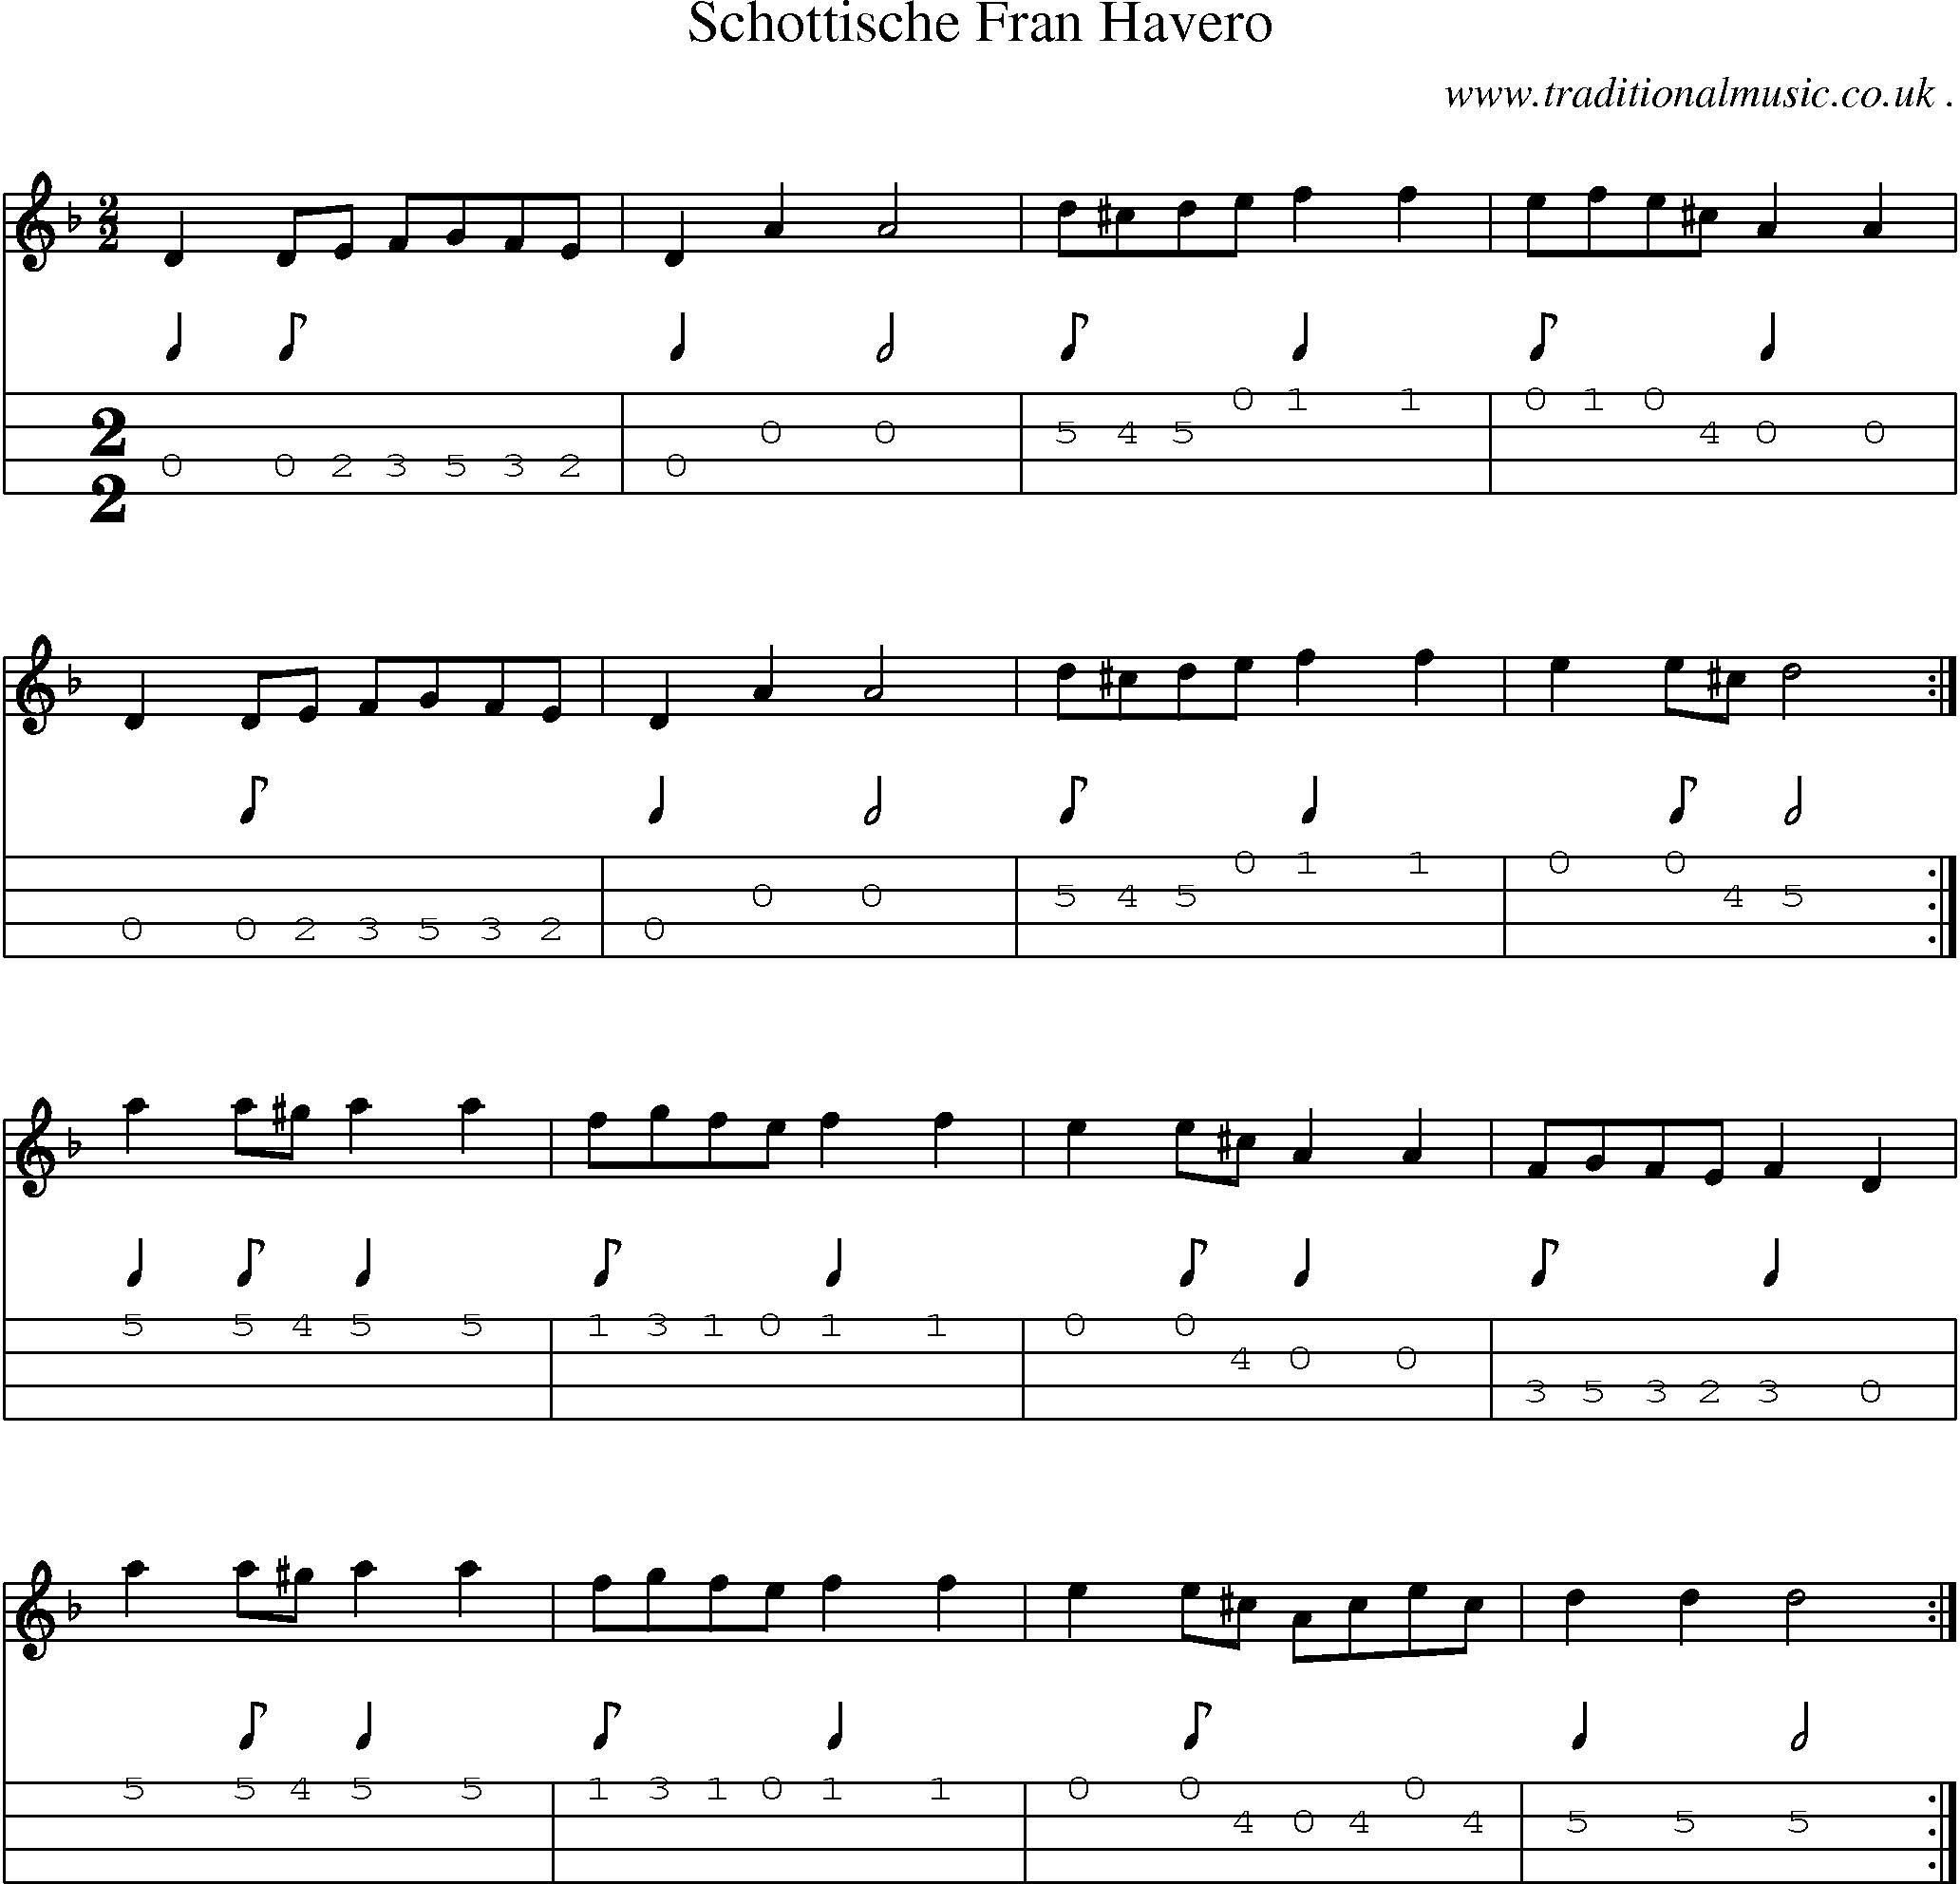 Sheet-Music and Mandolin Tabs for Schottische Fran Havero